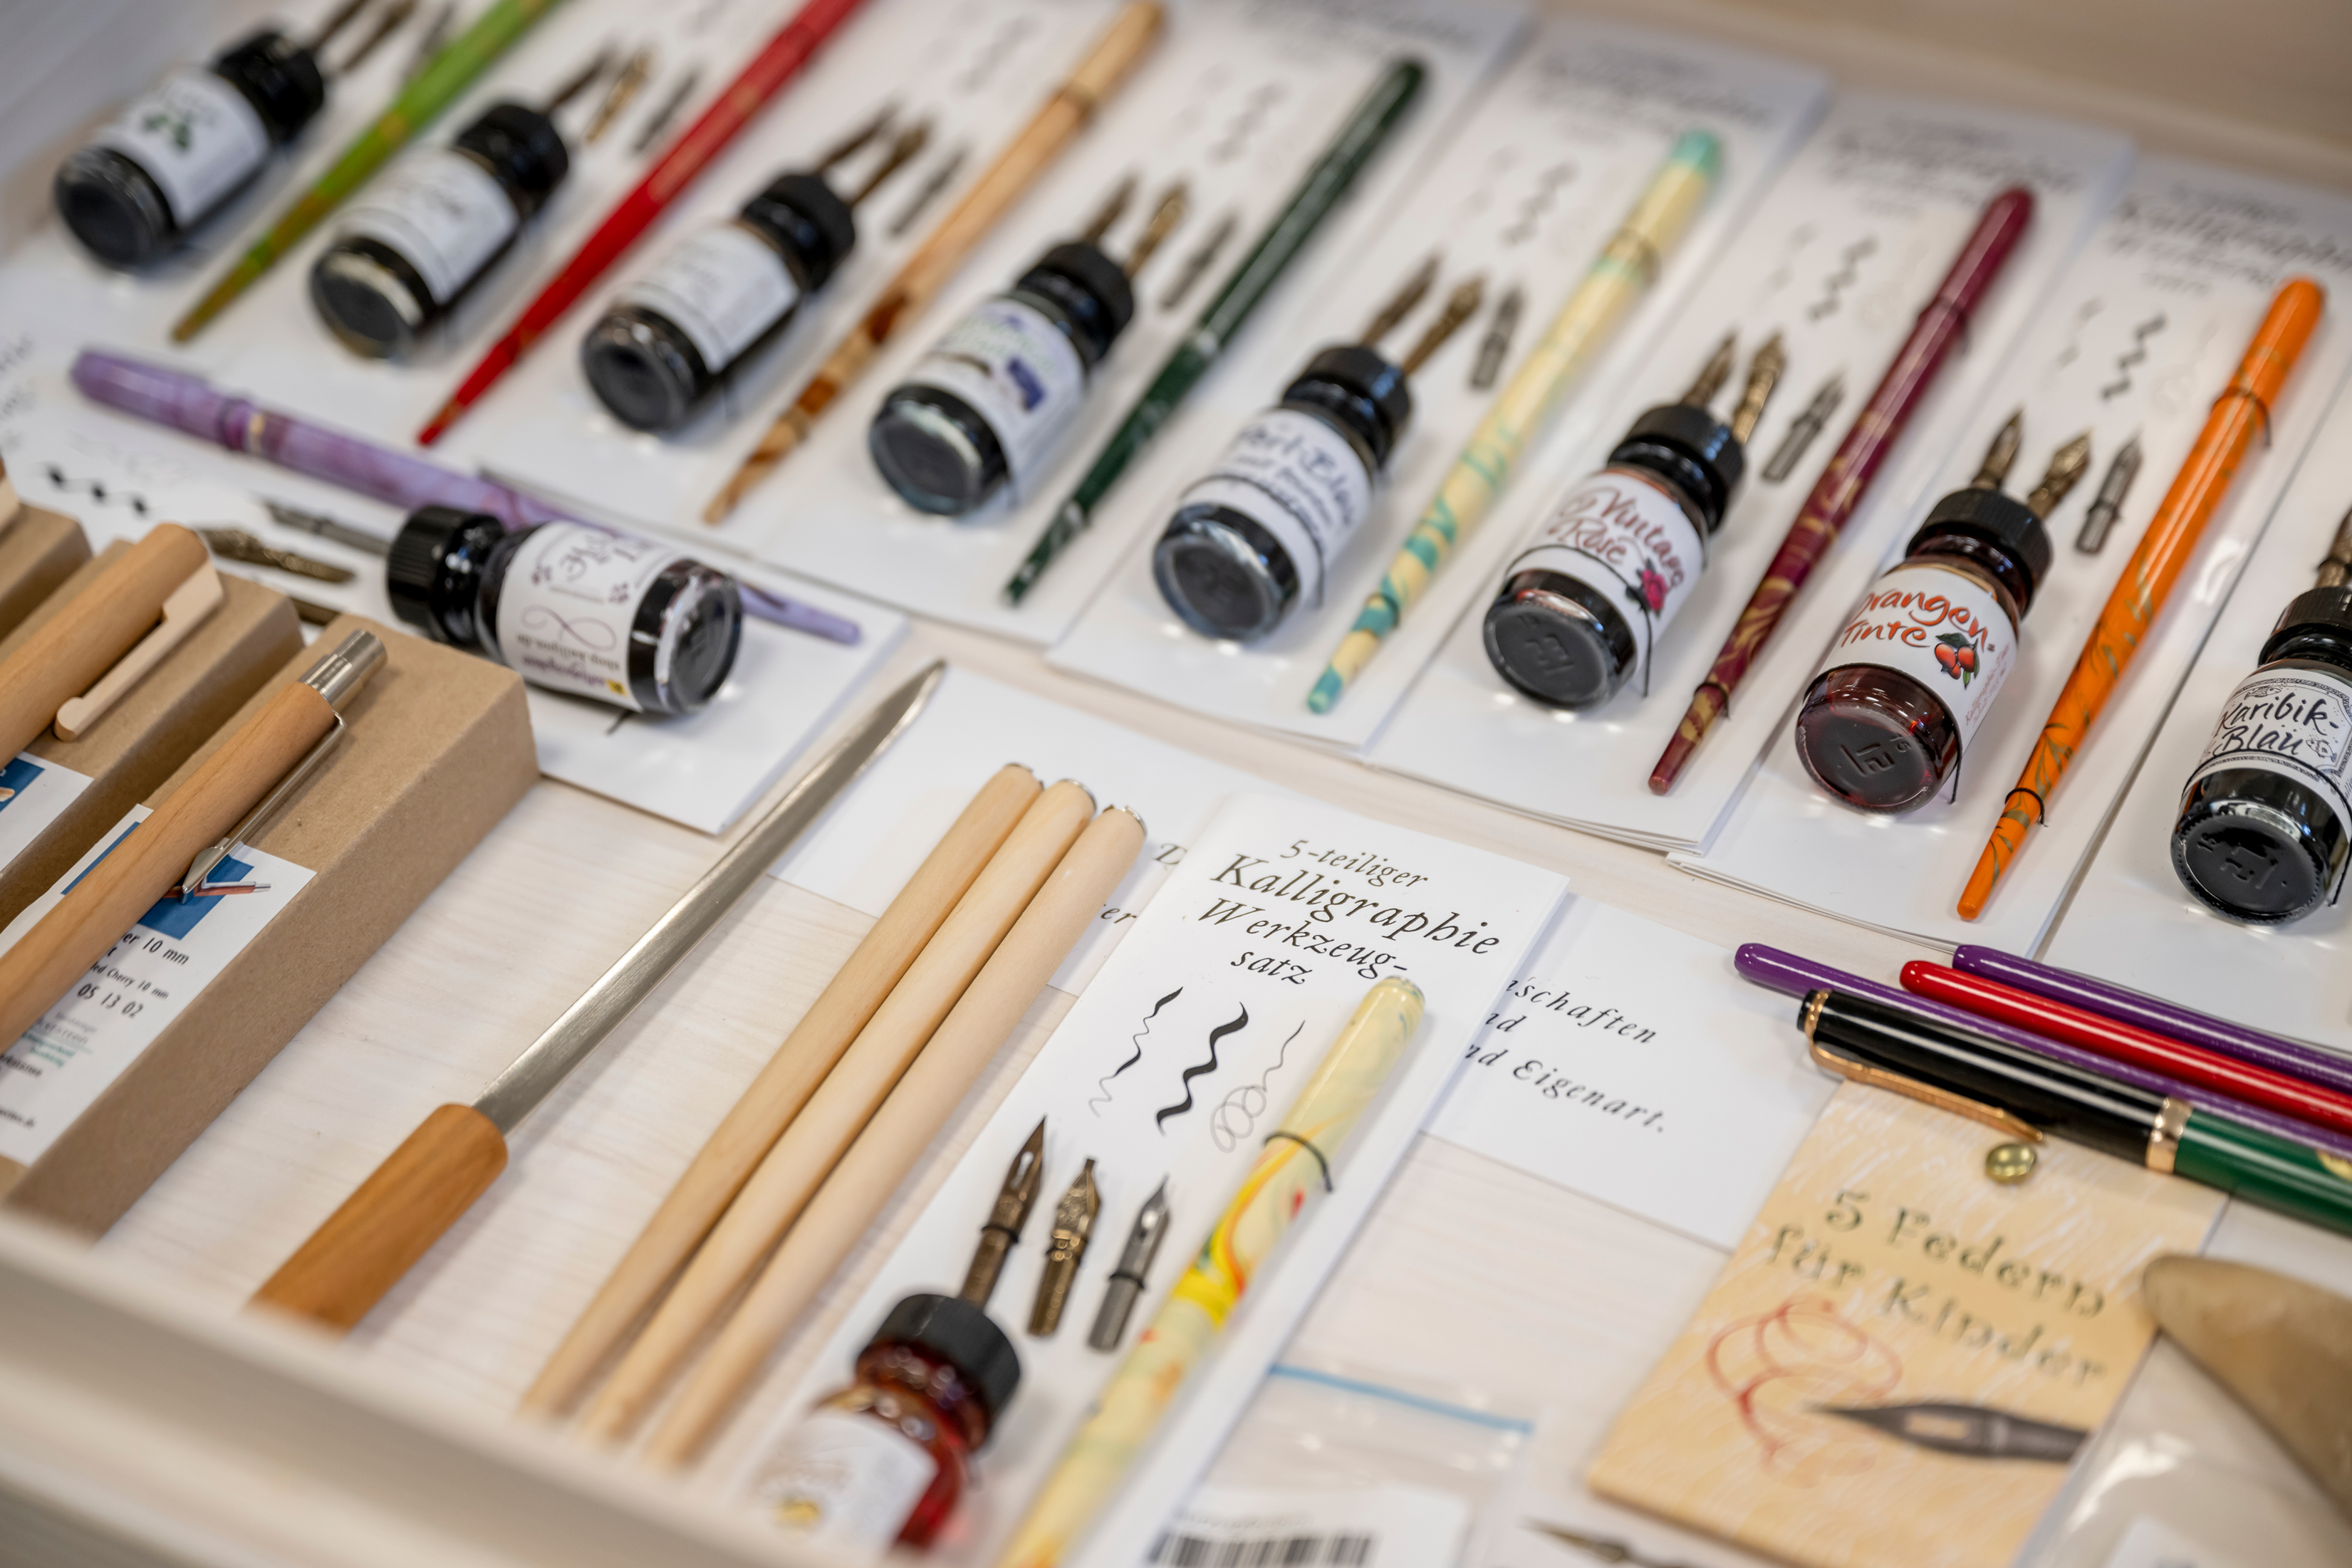 Geöffnete Schublade aus hellem Holz, darin verschiedene bunte Federkiele und Schreibfedern, kleine Gläser mit verschiedenfarbiger Tinte und Stifte